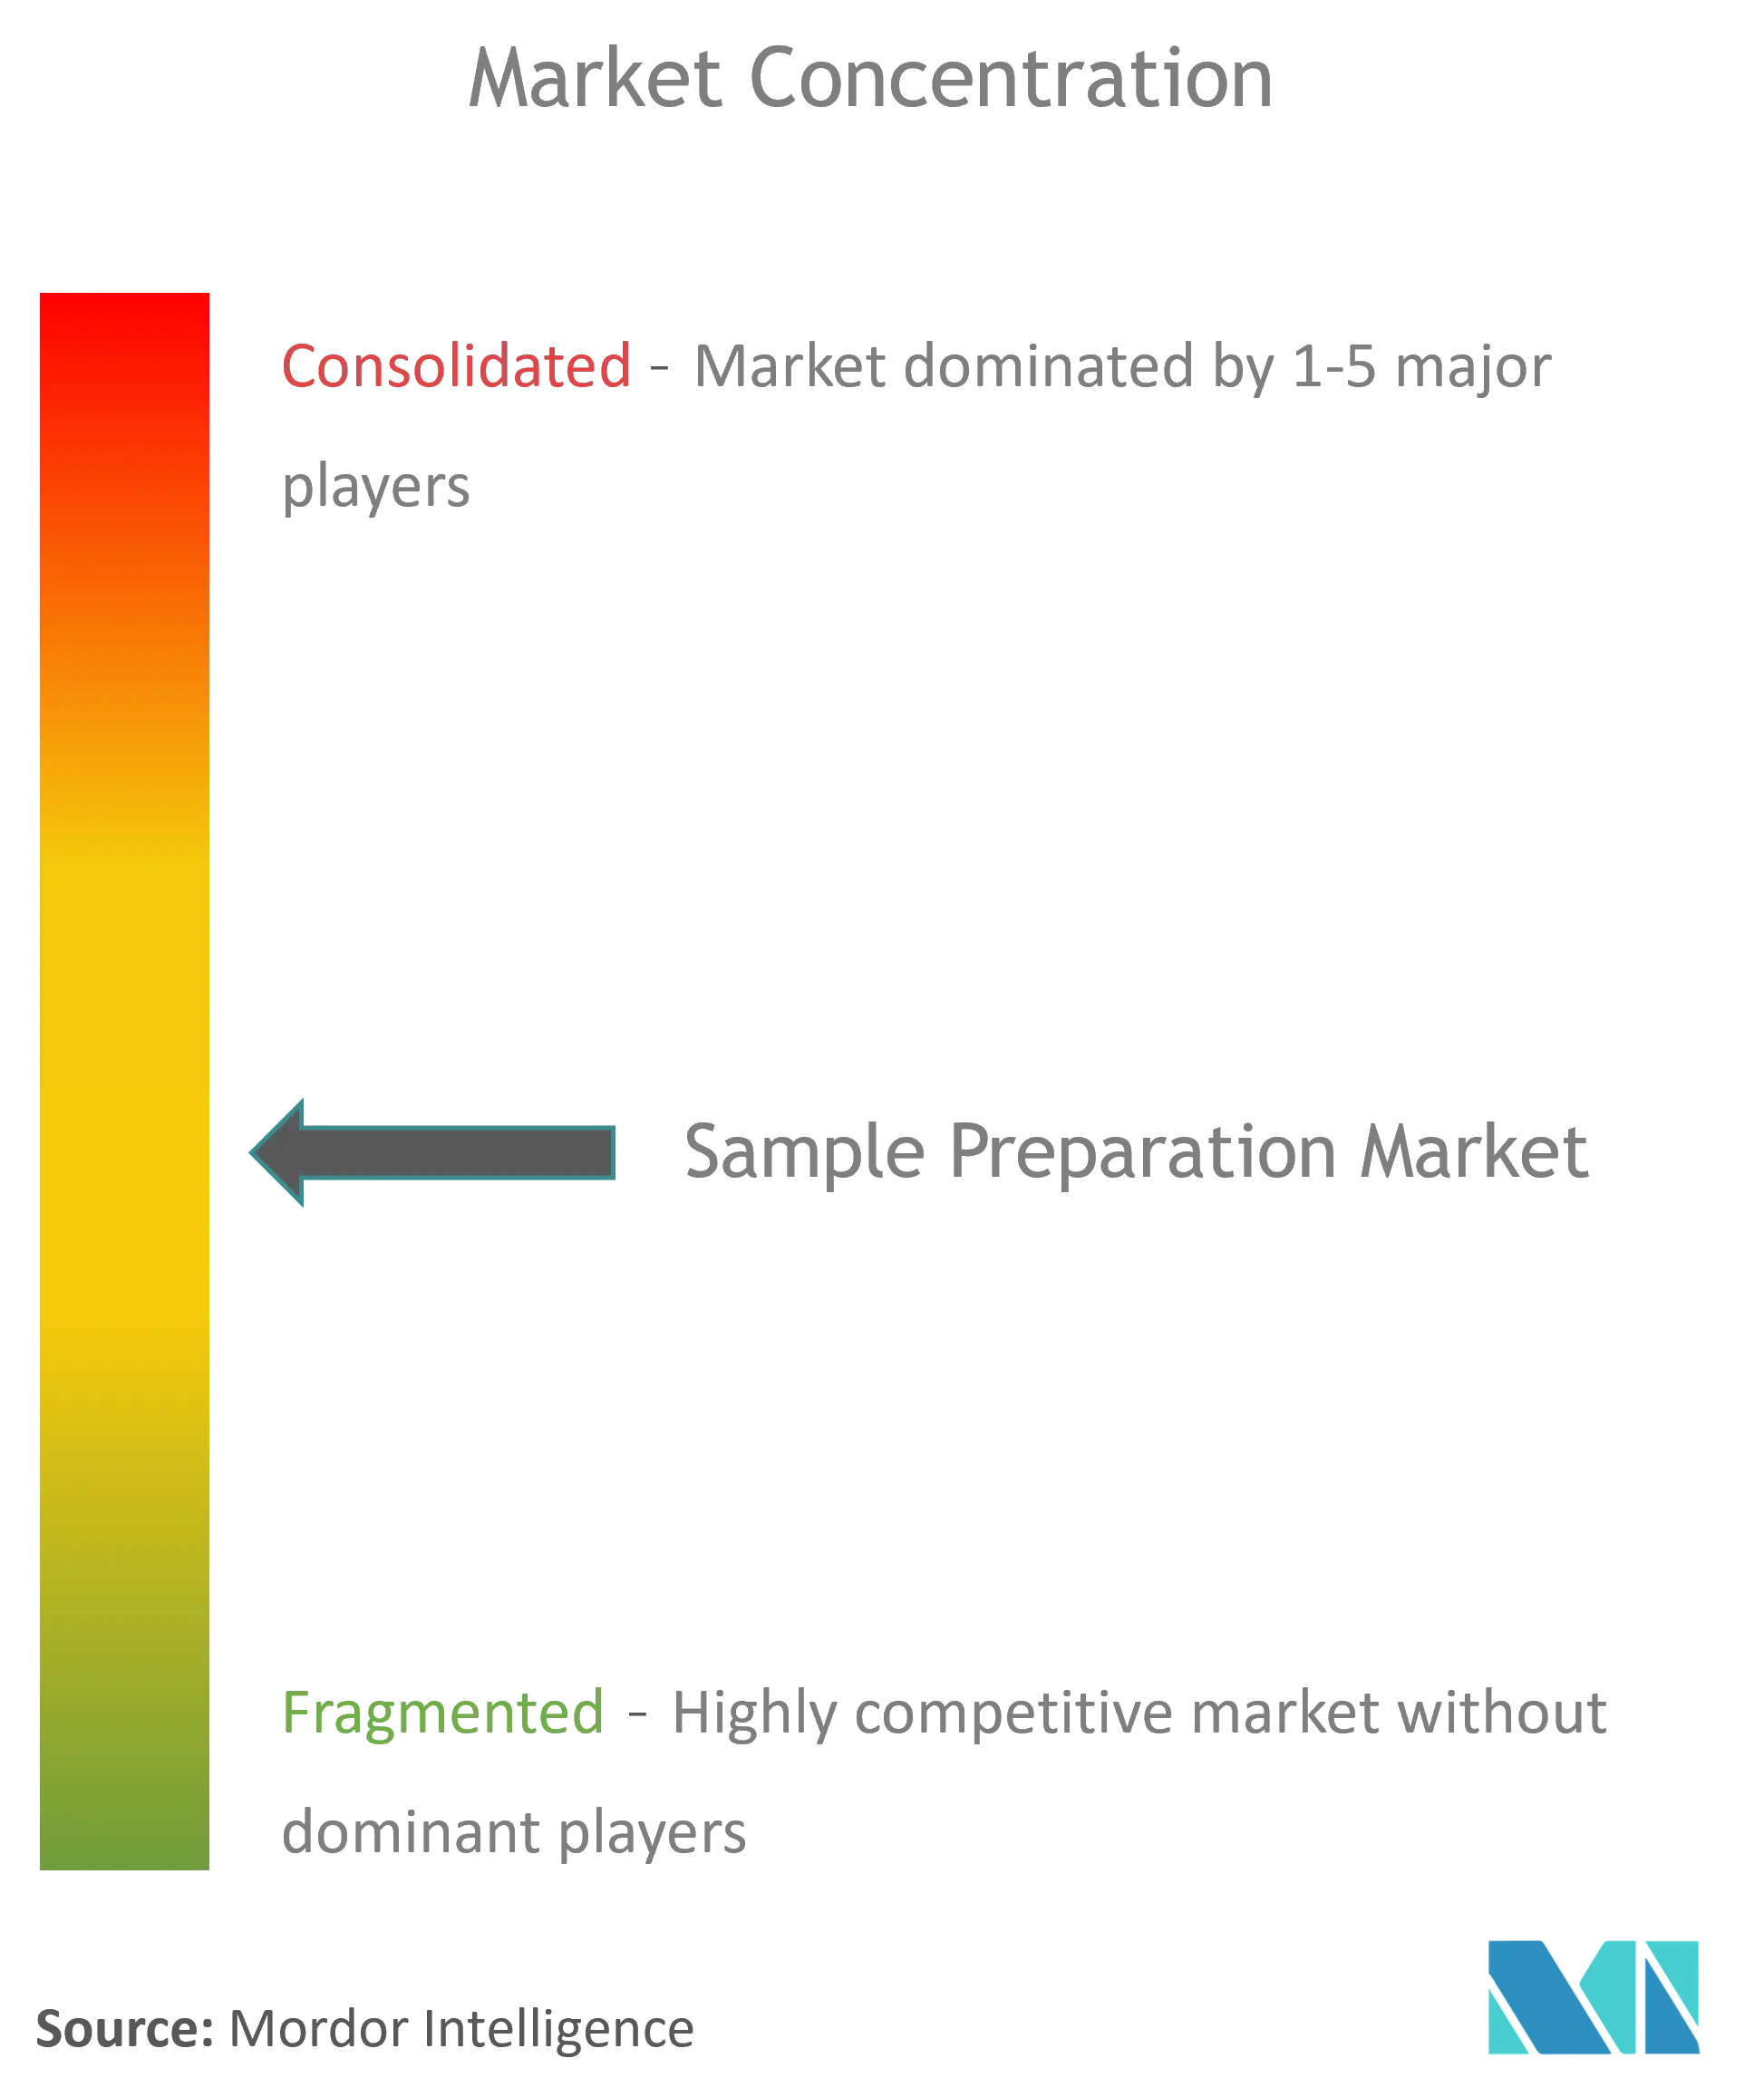 Global Sample Preparation Market Concentration